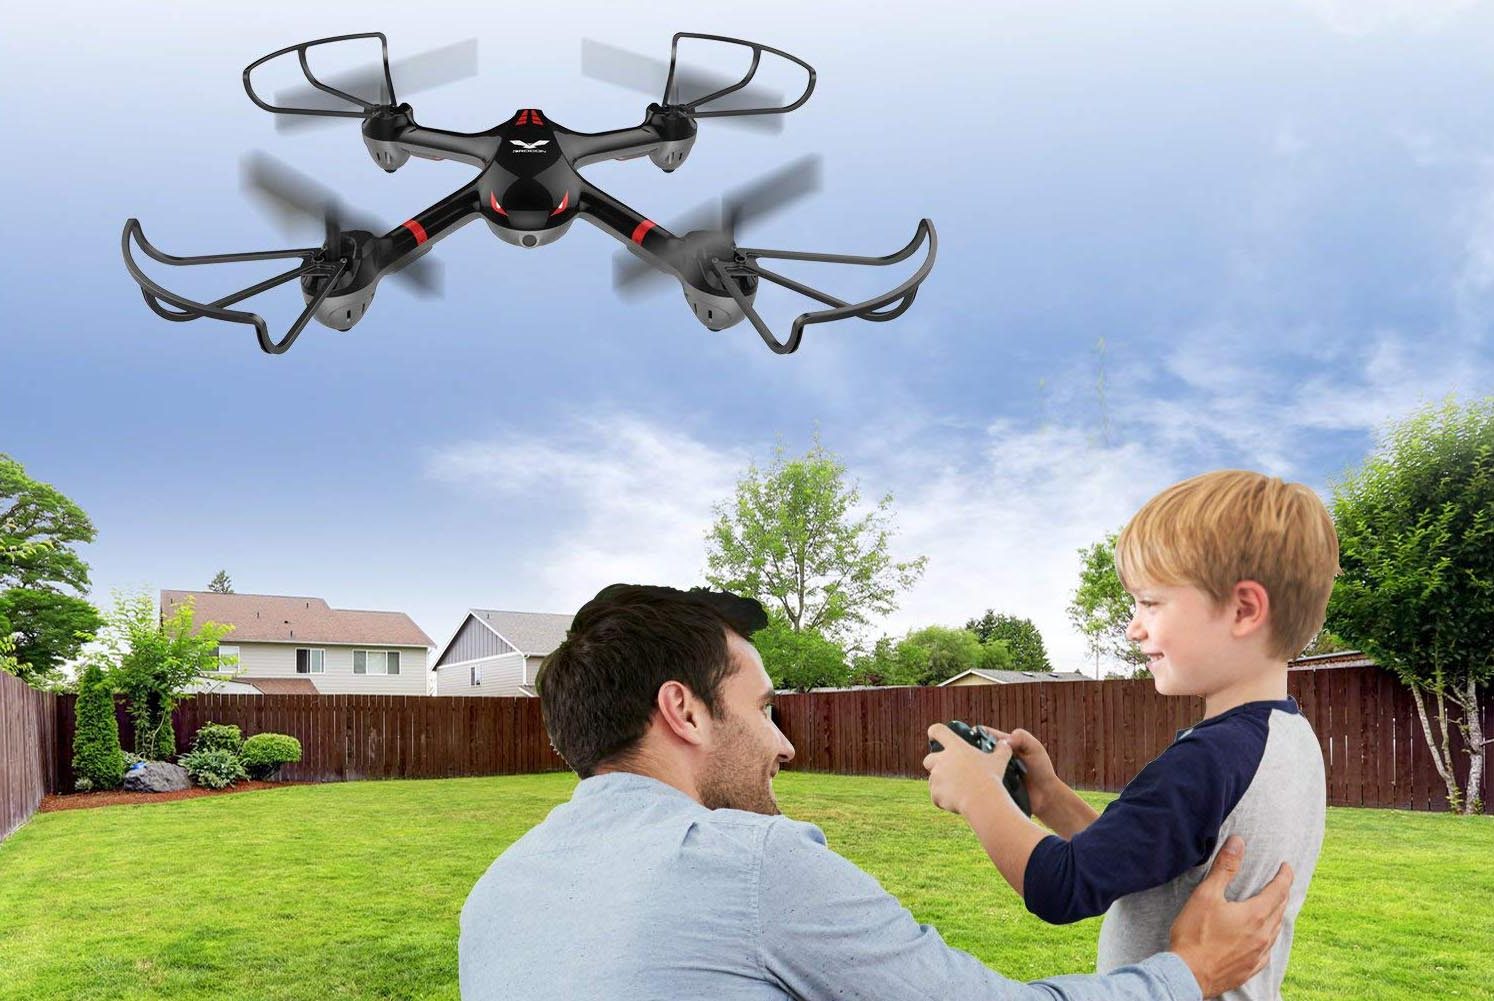 drones-para-niños-e1543669169185.jpg